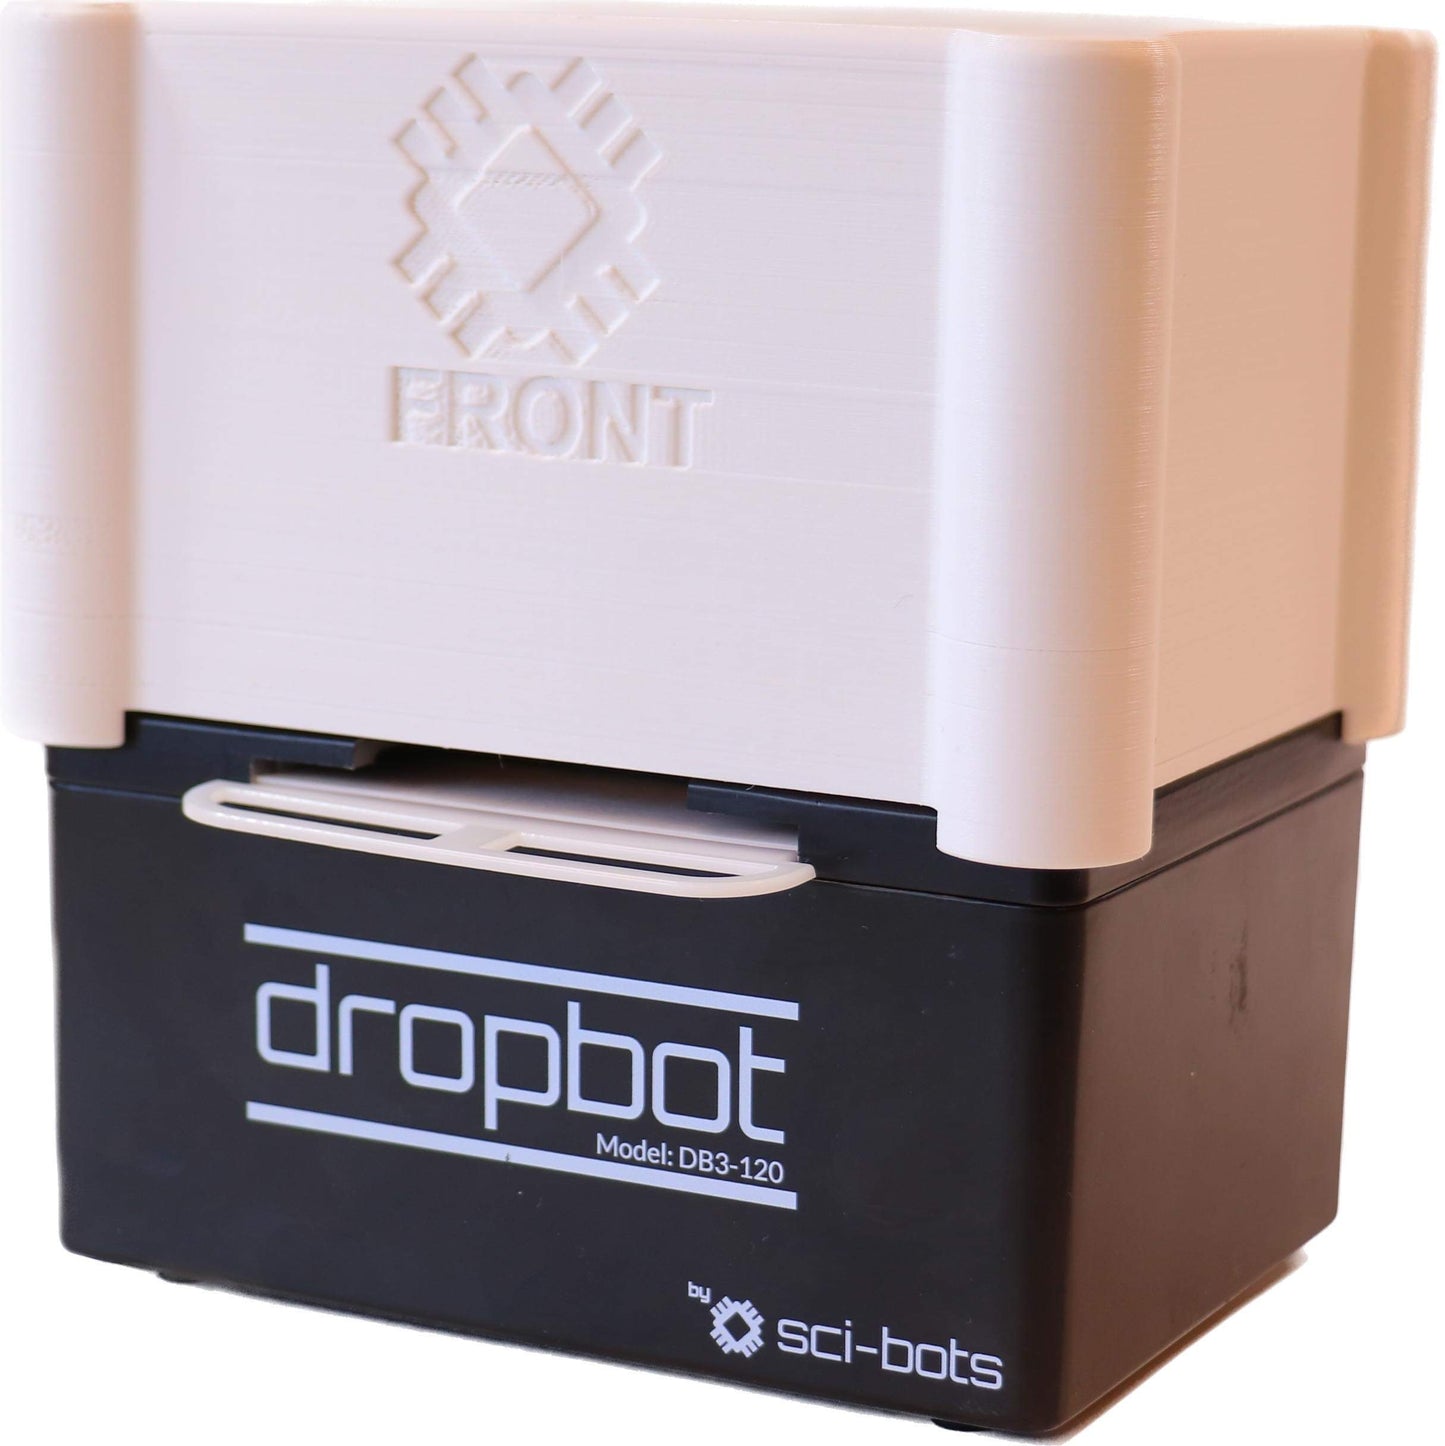 Dropbot Imaging Station